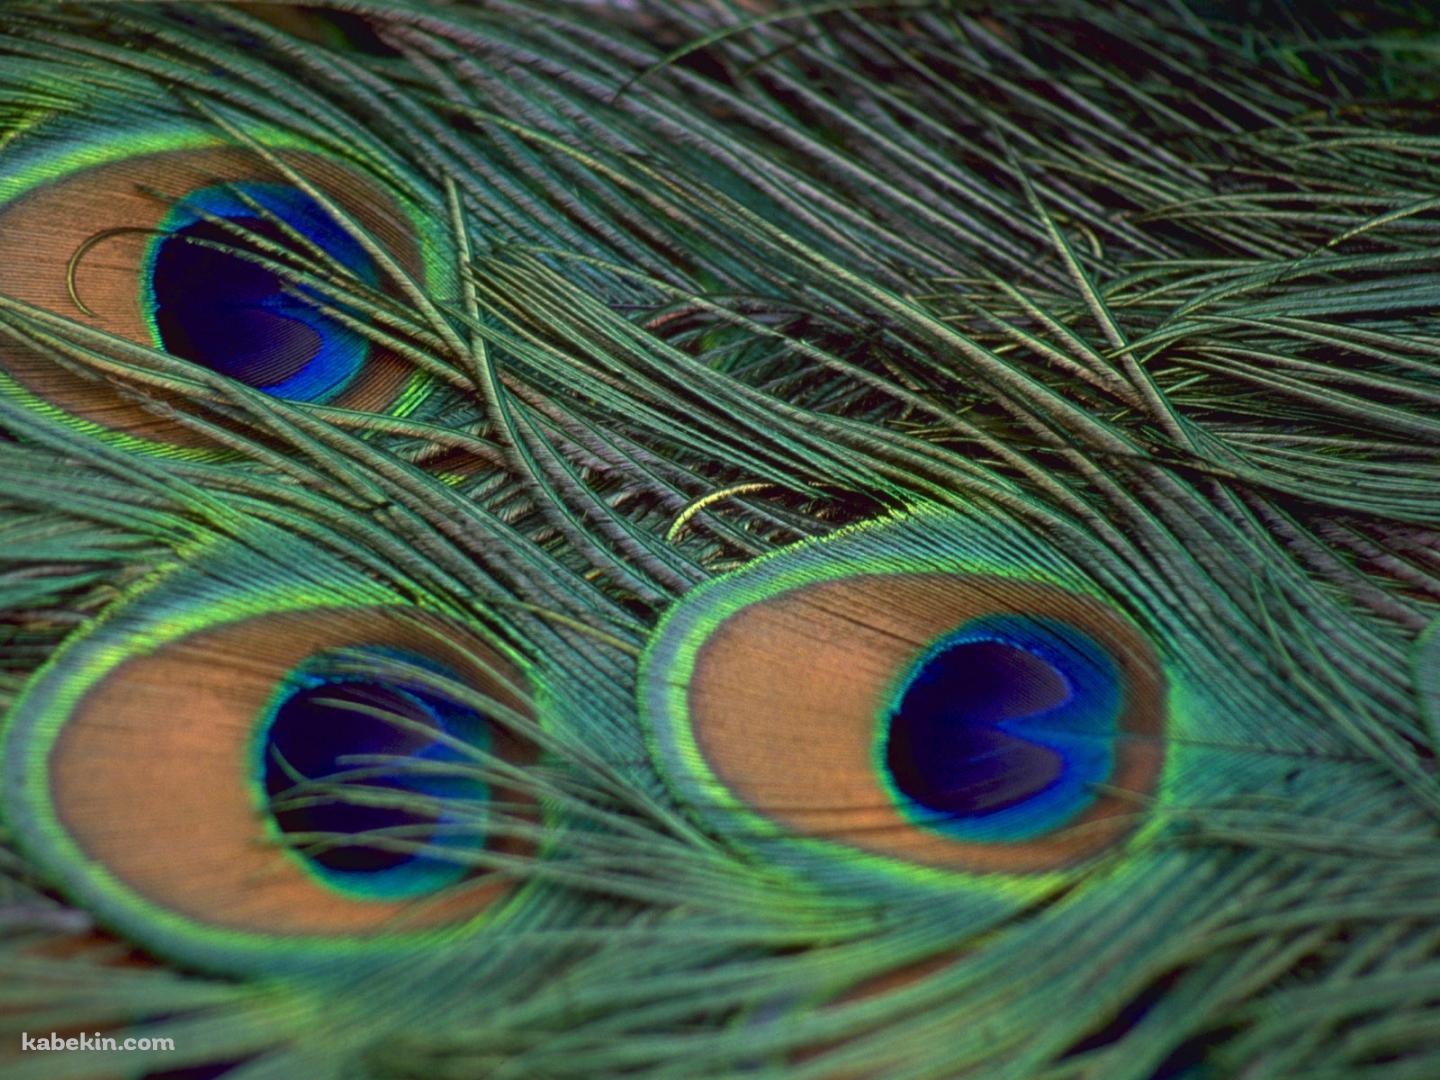 孔雀の羽の壁紙(1440px x 1080px) 高画質 PC・デスクトップ用